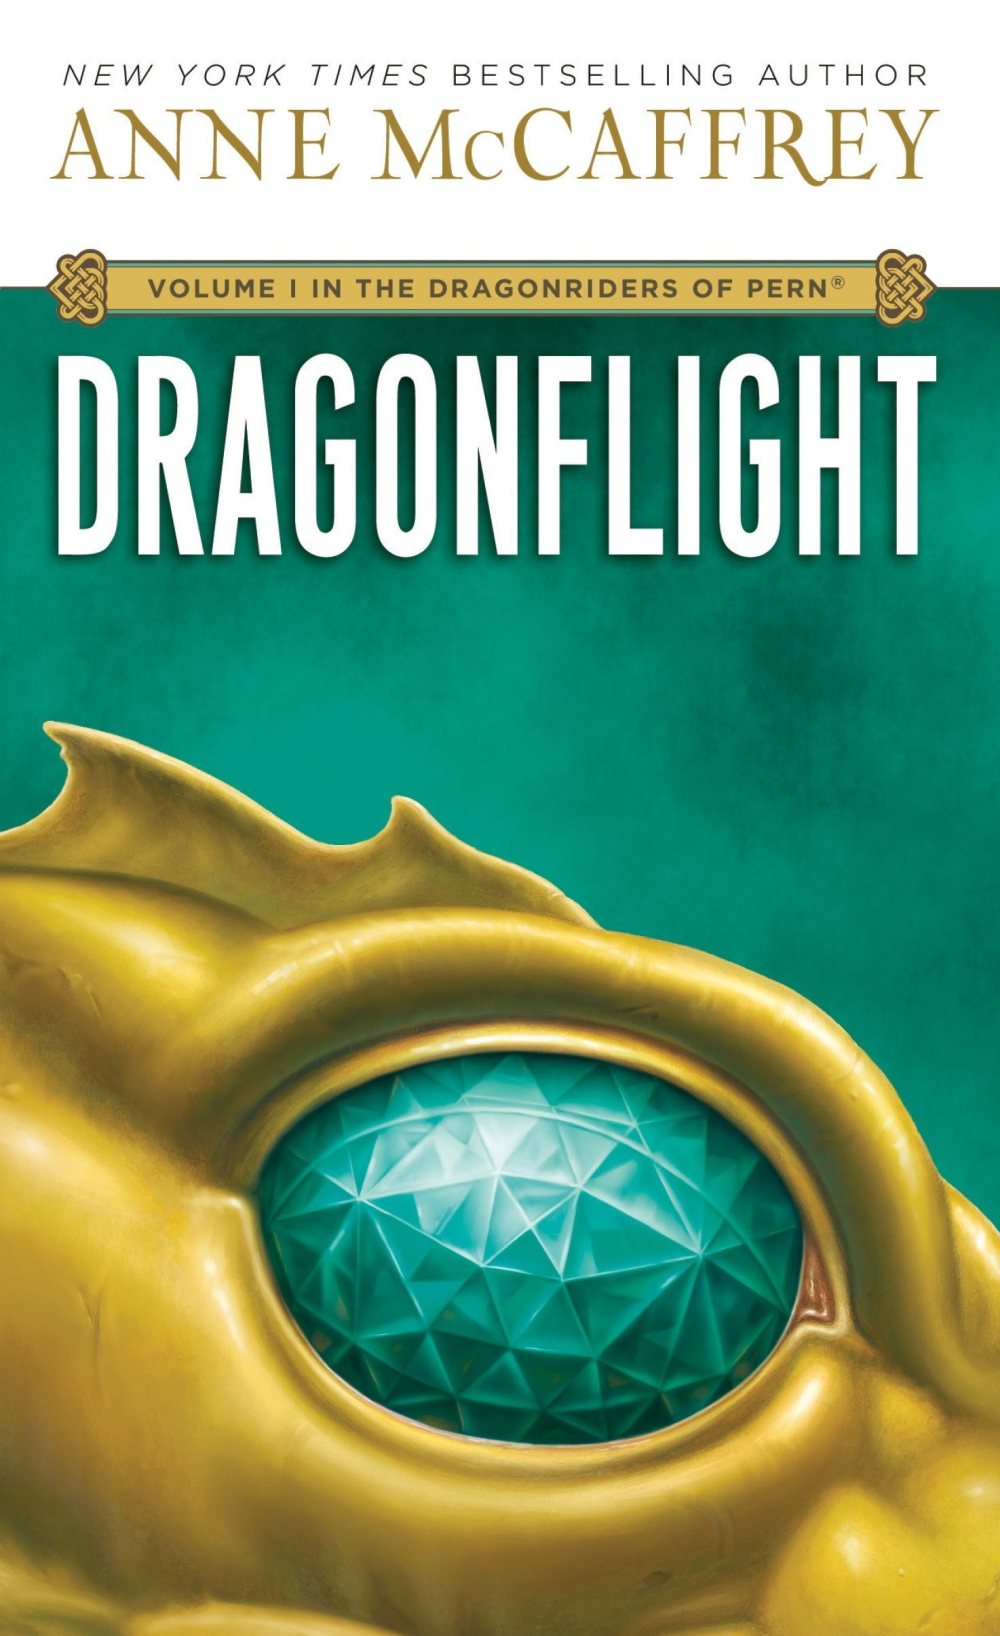 Cover des Buches "Dragonflight" von Anne McCaffrey